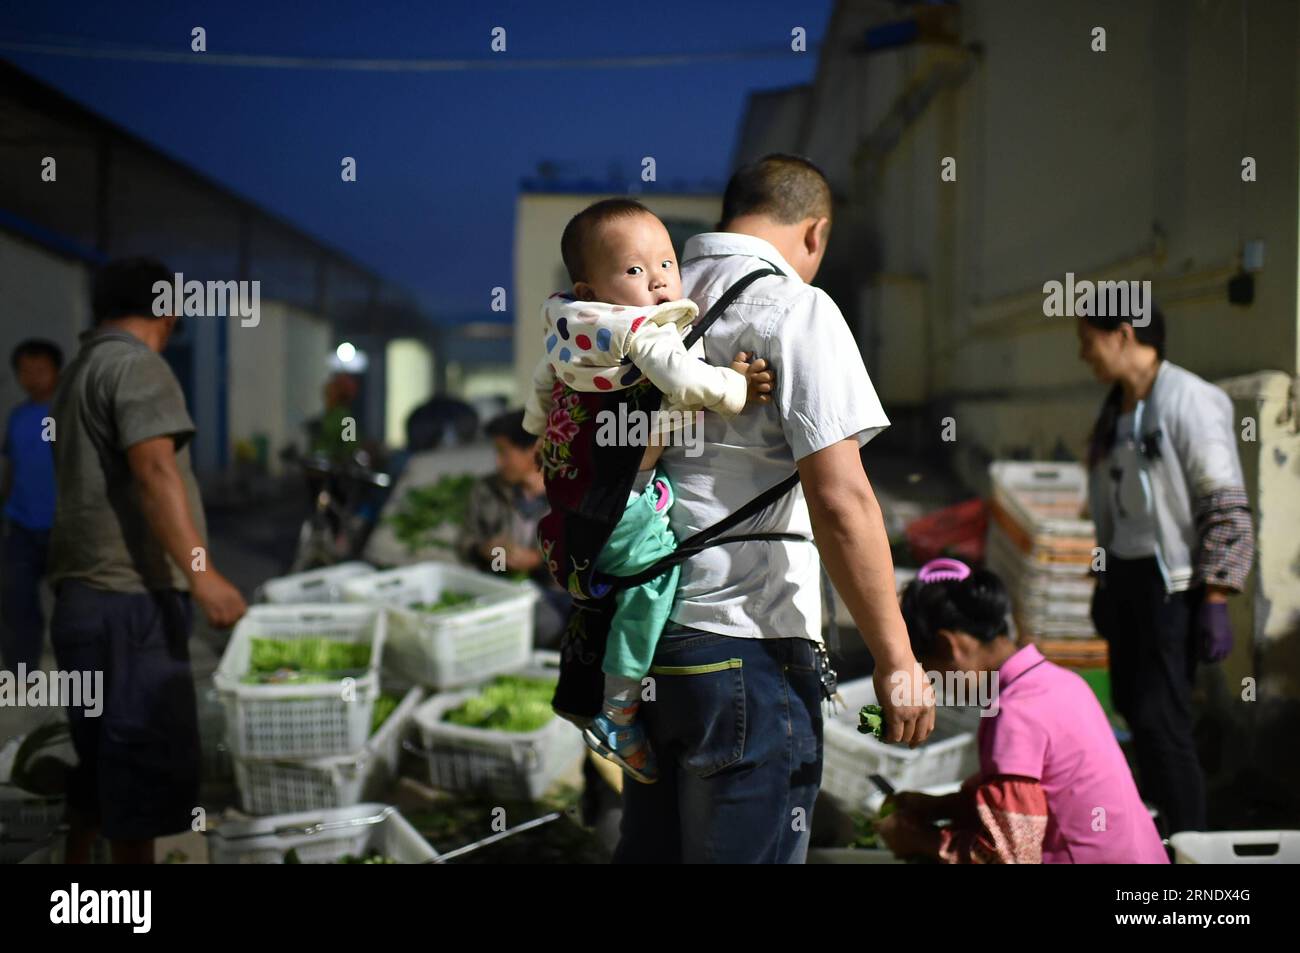 (160602) -- YINCHUAN, 2 giugno 2016 -- Xie Dihuai, un lavoratore agricolo della provincia di Guizhou della Cina sud-occidentale, porta il suo bambino sulla schiena mentre lavora nella base vegetale del villaggio di Guinan nella città di Changxin della contea di Helan, nella regione autonoma Ningxia Hui della Cina nord-occidentale, 31 maggio 2016. Negli ultimi anni, Ningxia ha costruito 24 basi vegetali che forniscono ortaggi per Hong Kong. Attualmente, queste basi forniscono cavolo cinese, cavolo del Guangdong e altre varietà, che soddisfano i gusti della gente nel sud della Cina. Le verdure vengono trasportate con una catena fredda da Ningxia a Hong Kong, per mantenere i propri diritti Foto Stock